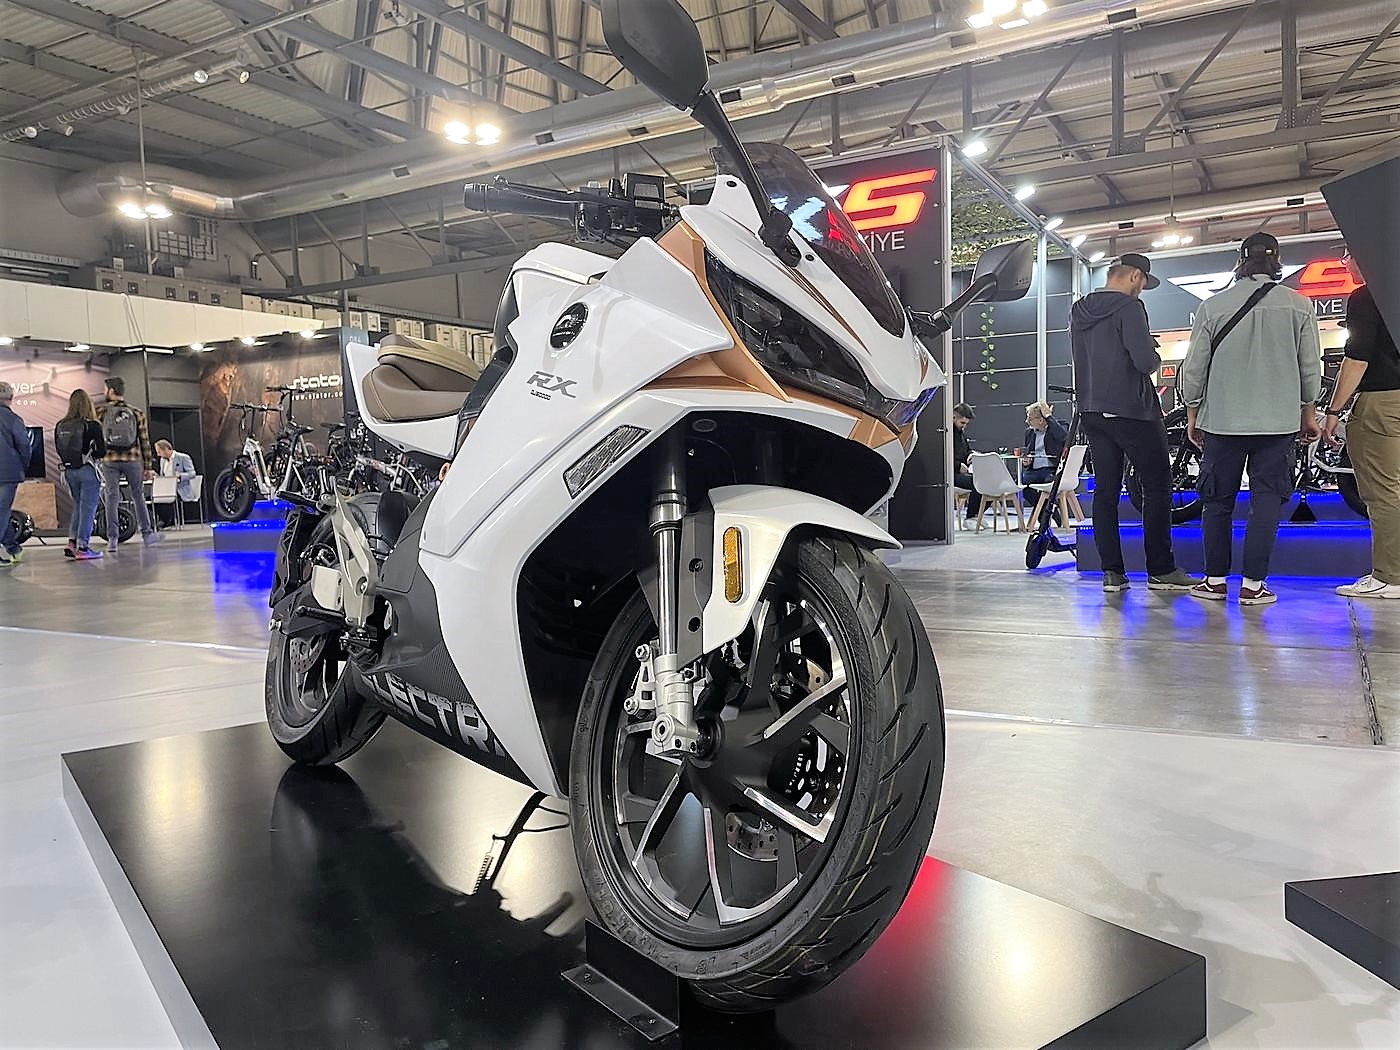 QJ Motor RX : pourquoi cette moto électrique est un gros fake